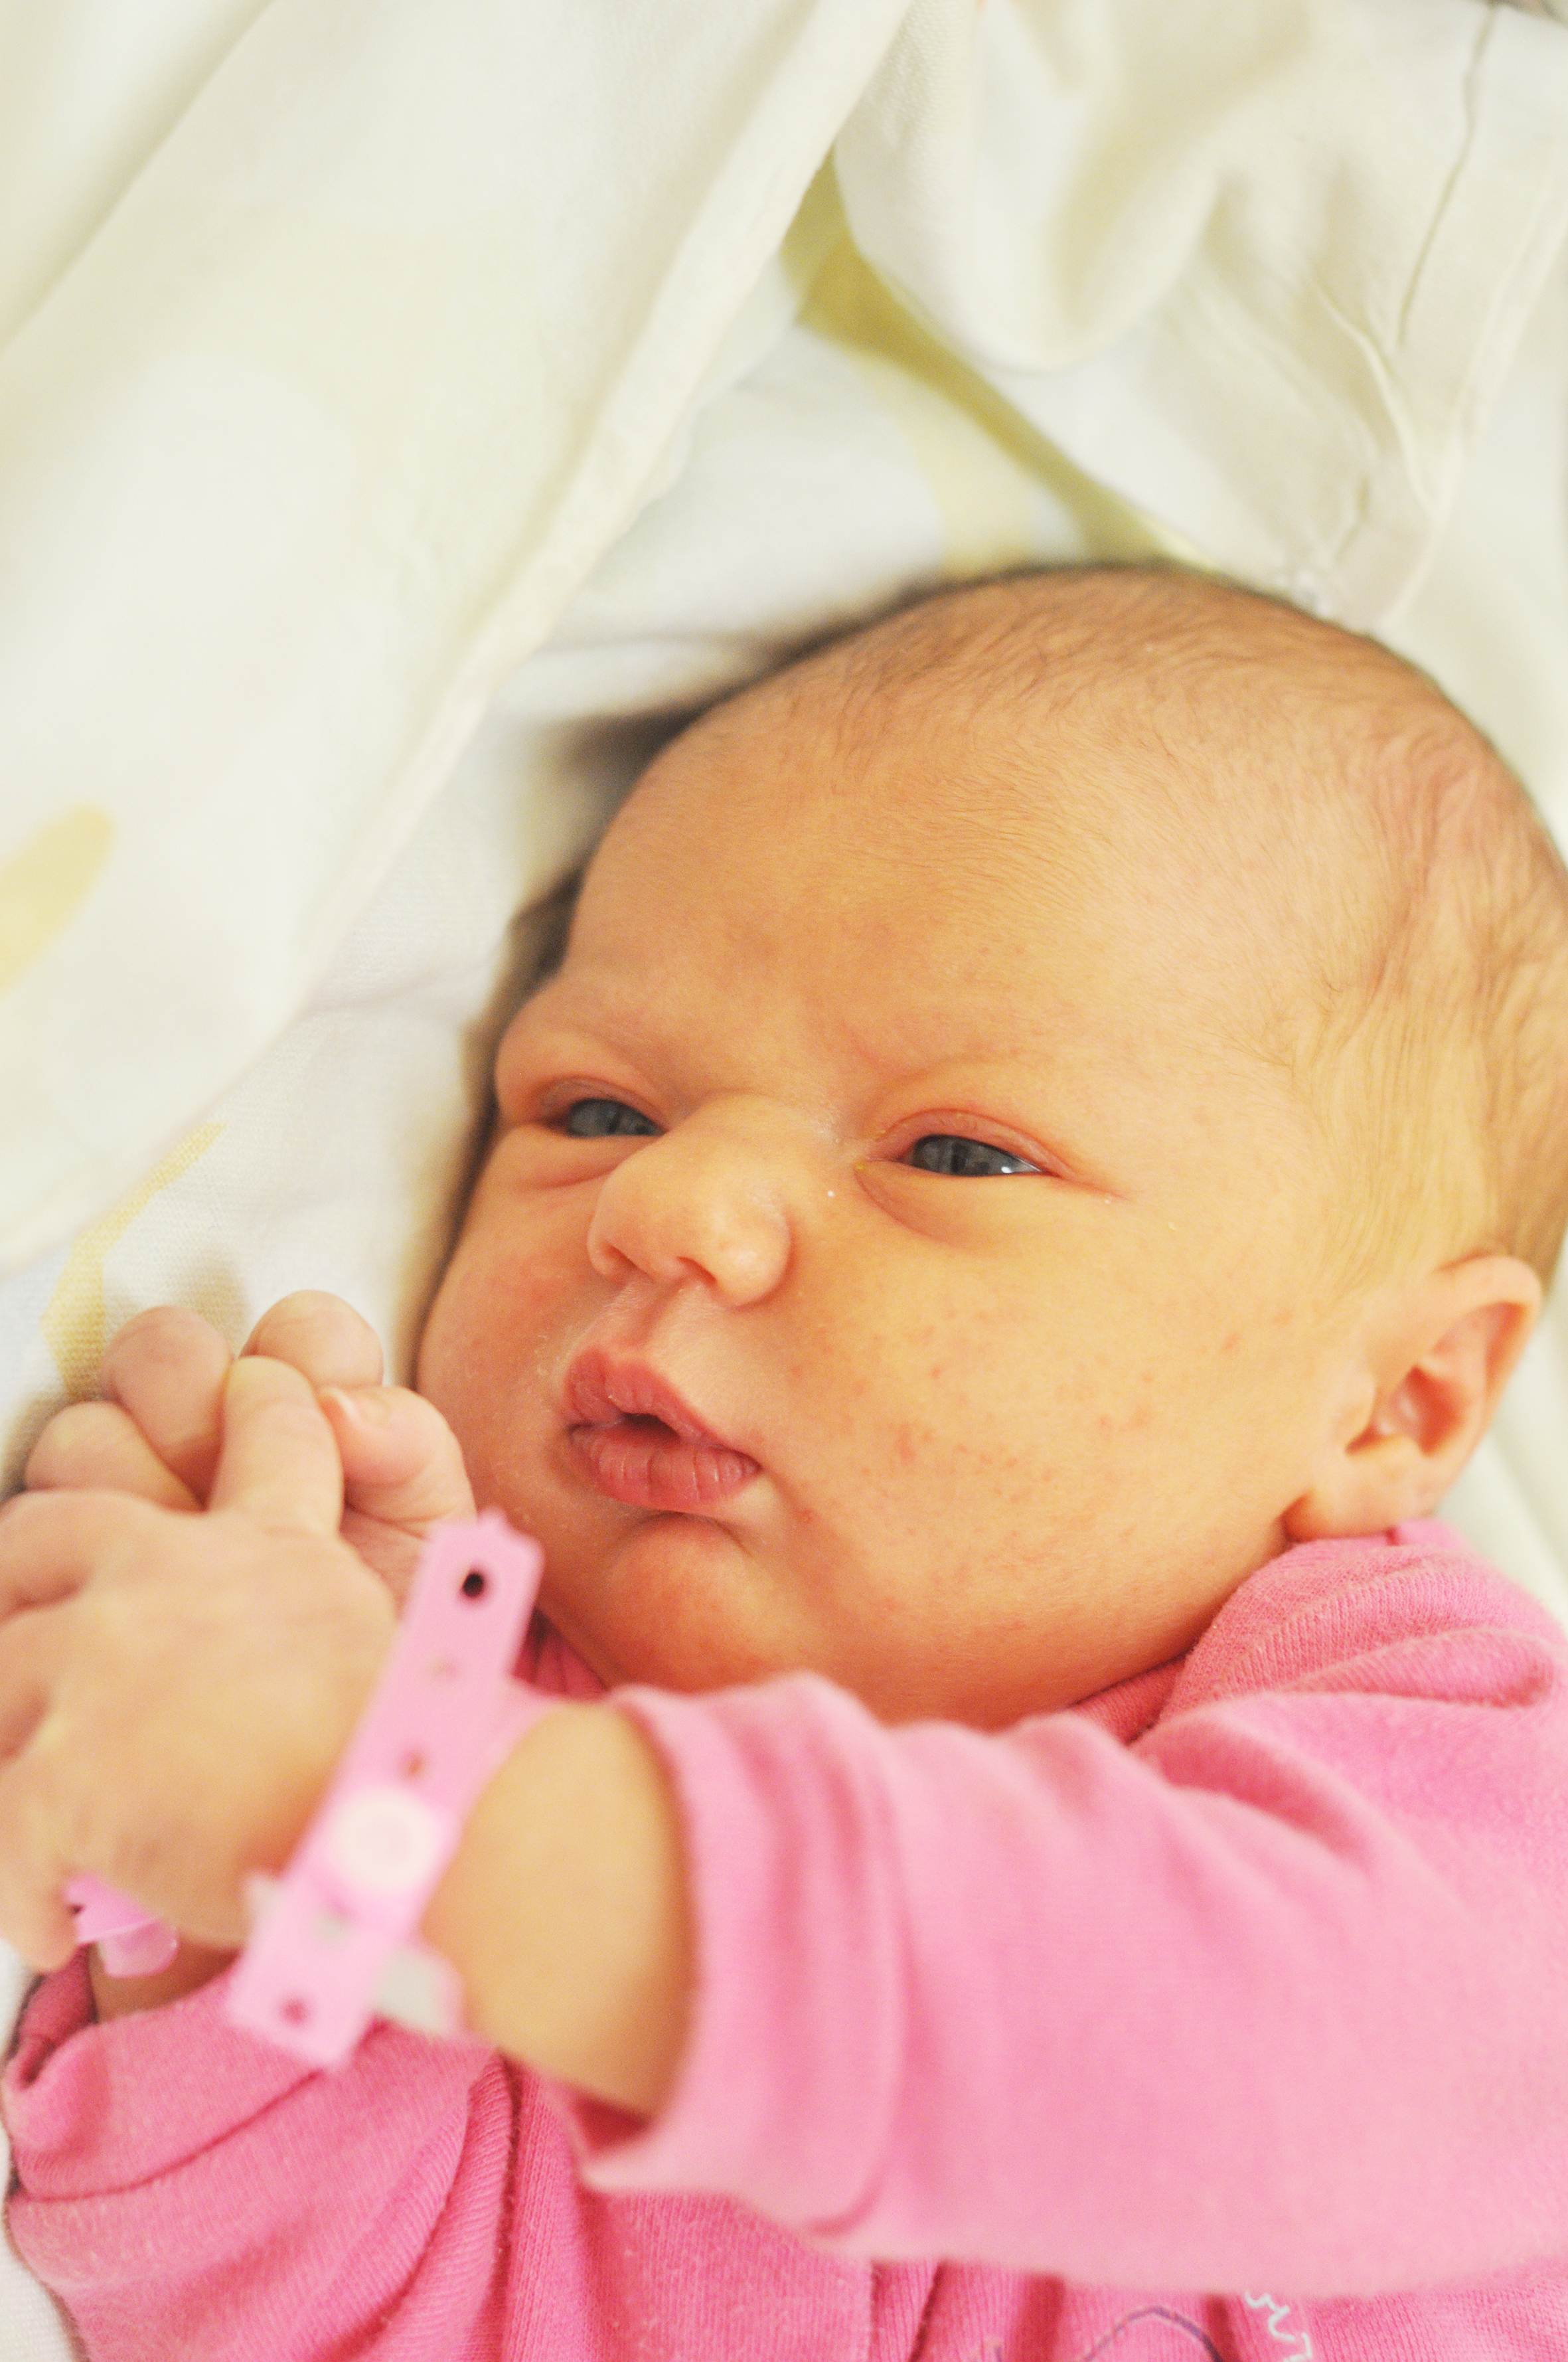 Amelka Mróz jest córeczką Darii i Romana z Owsiszcz. Urodziła się 3 stycznia o 9.27. Przy wadze 3720 g osiągnęła długość 58 cm. W domu czeka brat Wojtek.